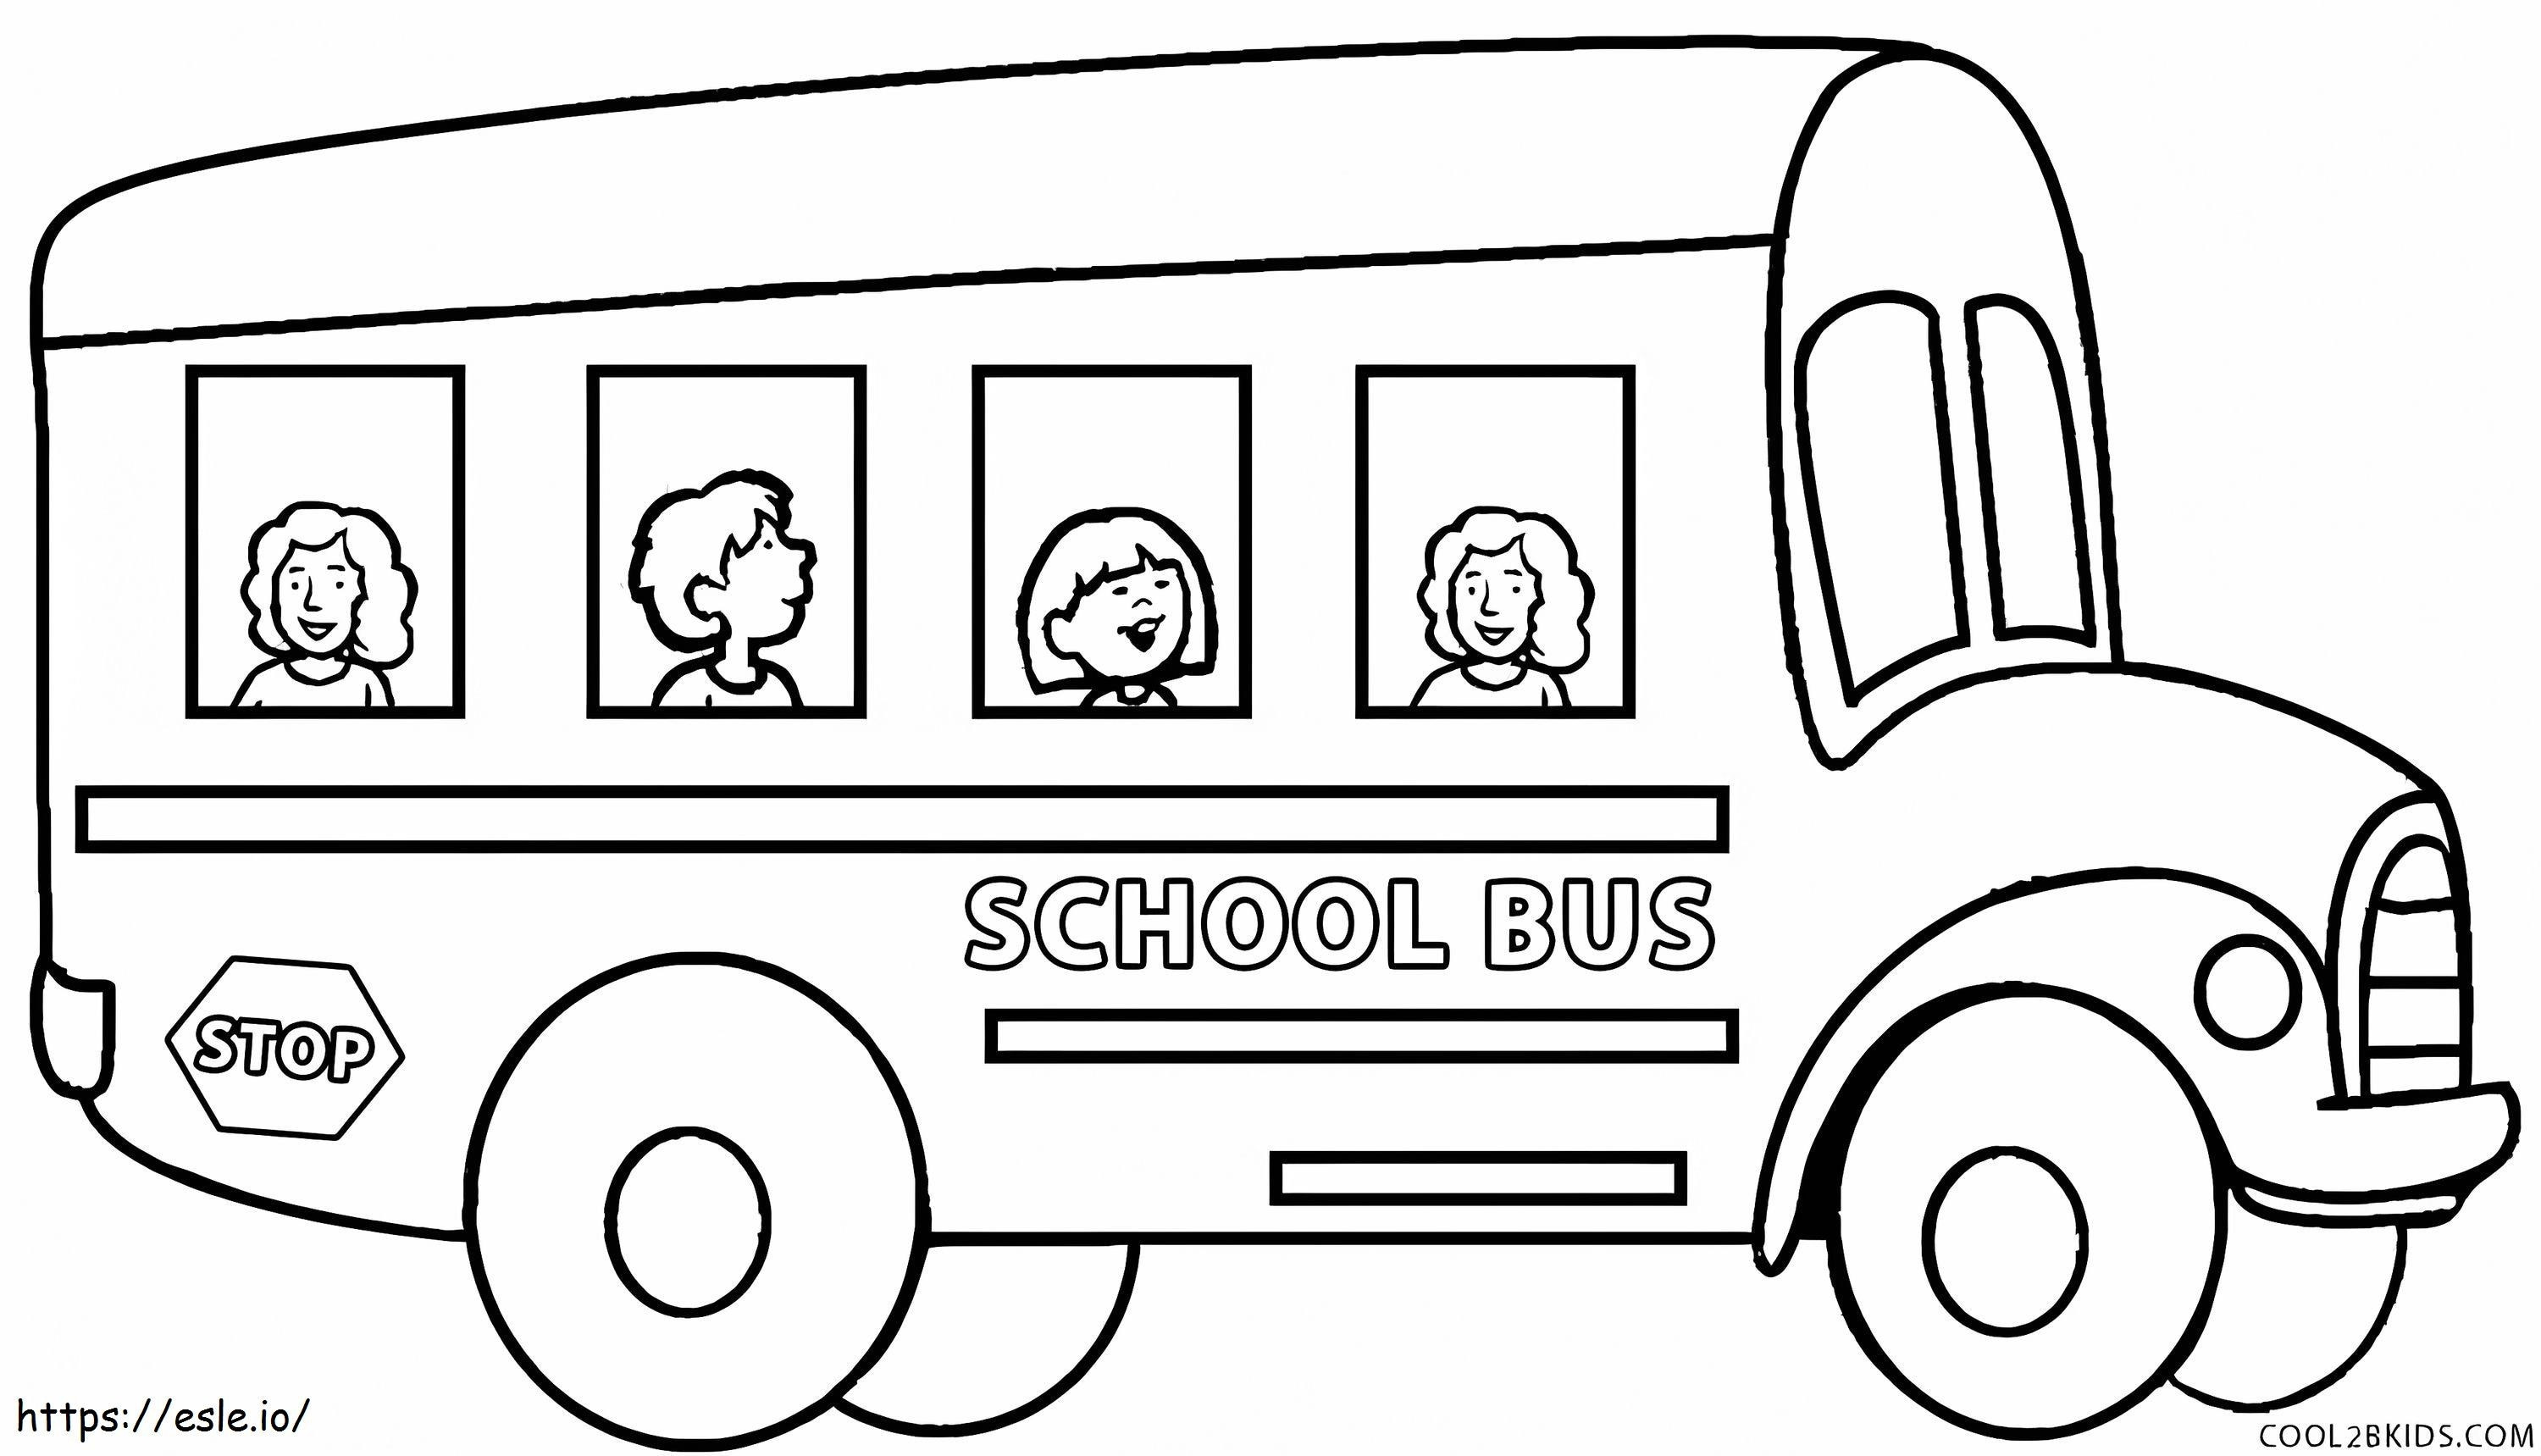 Coloriage Quatre enfants dans un autobus scolaire à imprimer dessin